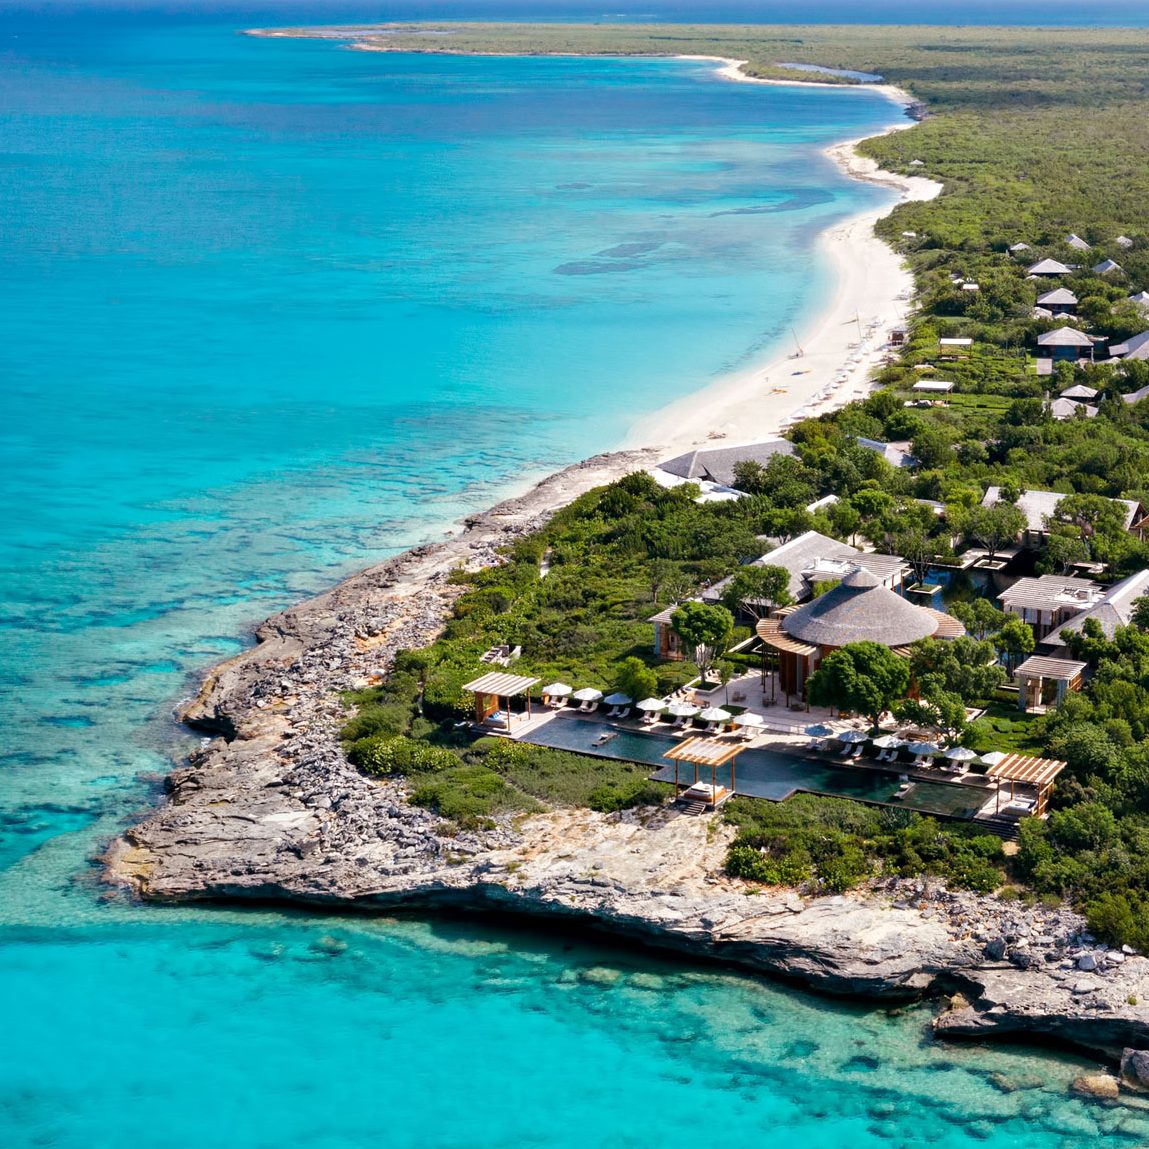 001-Amanyara-Luxury-Resort-Providenciales-Turks-and-Caicos-Islands